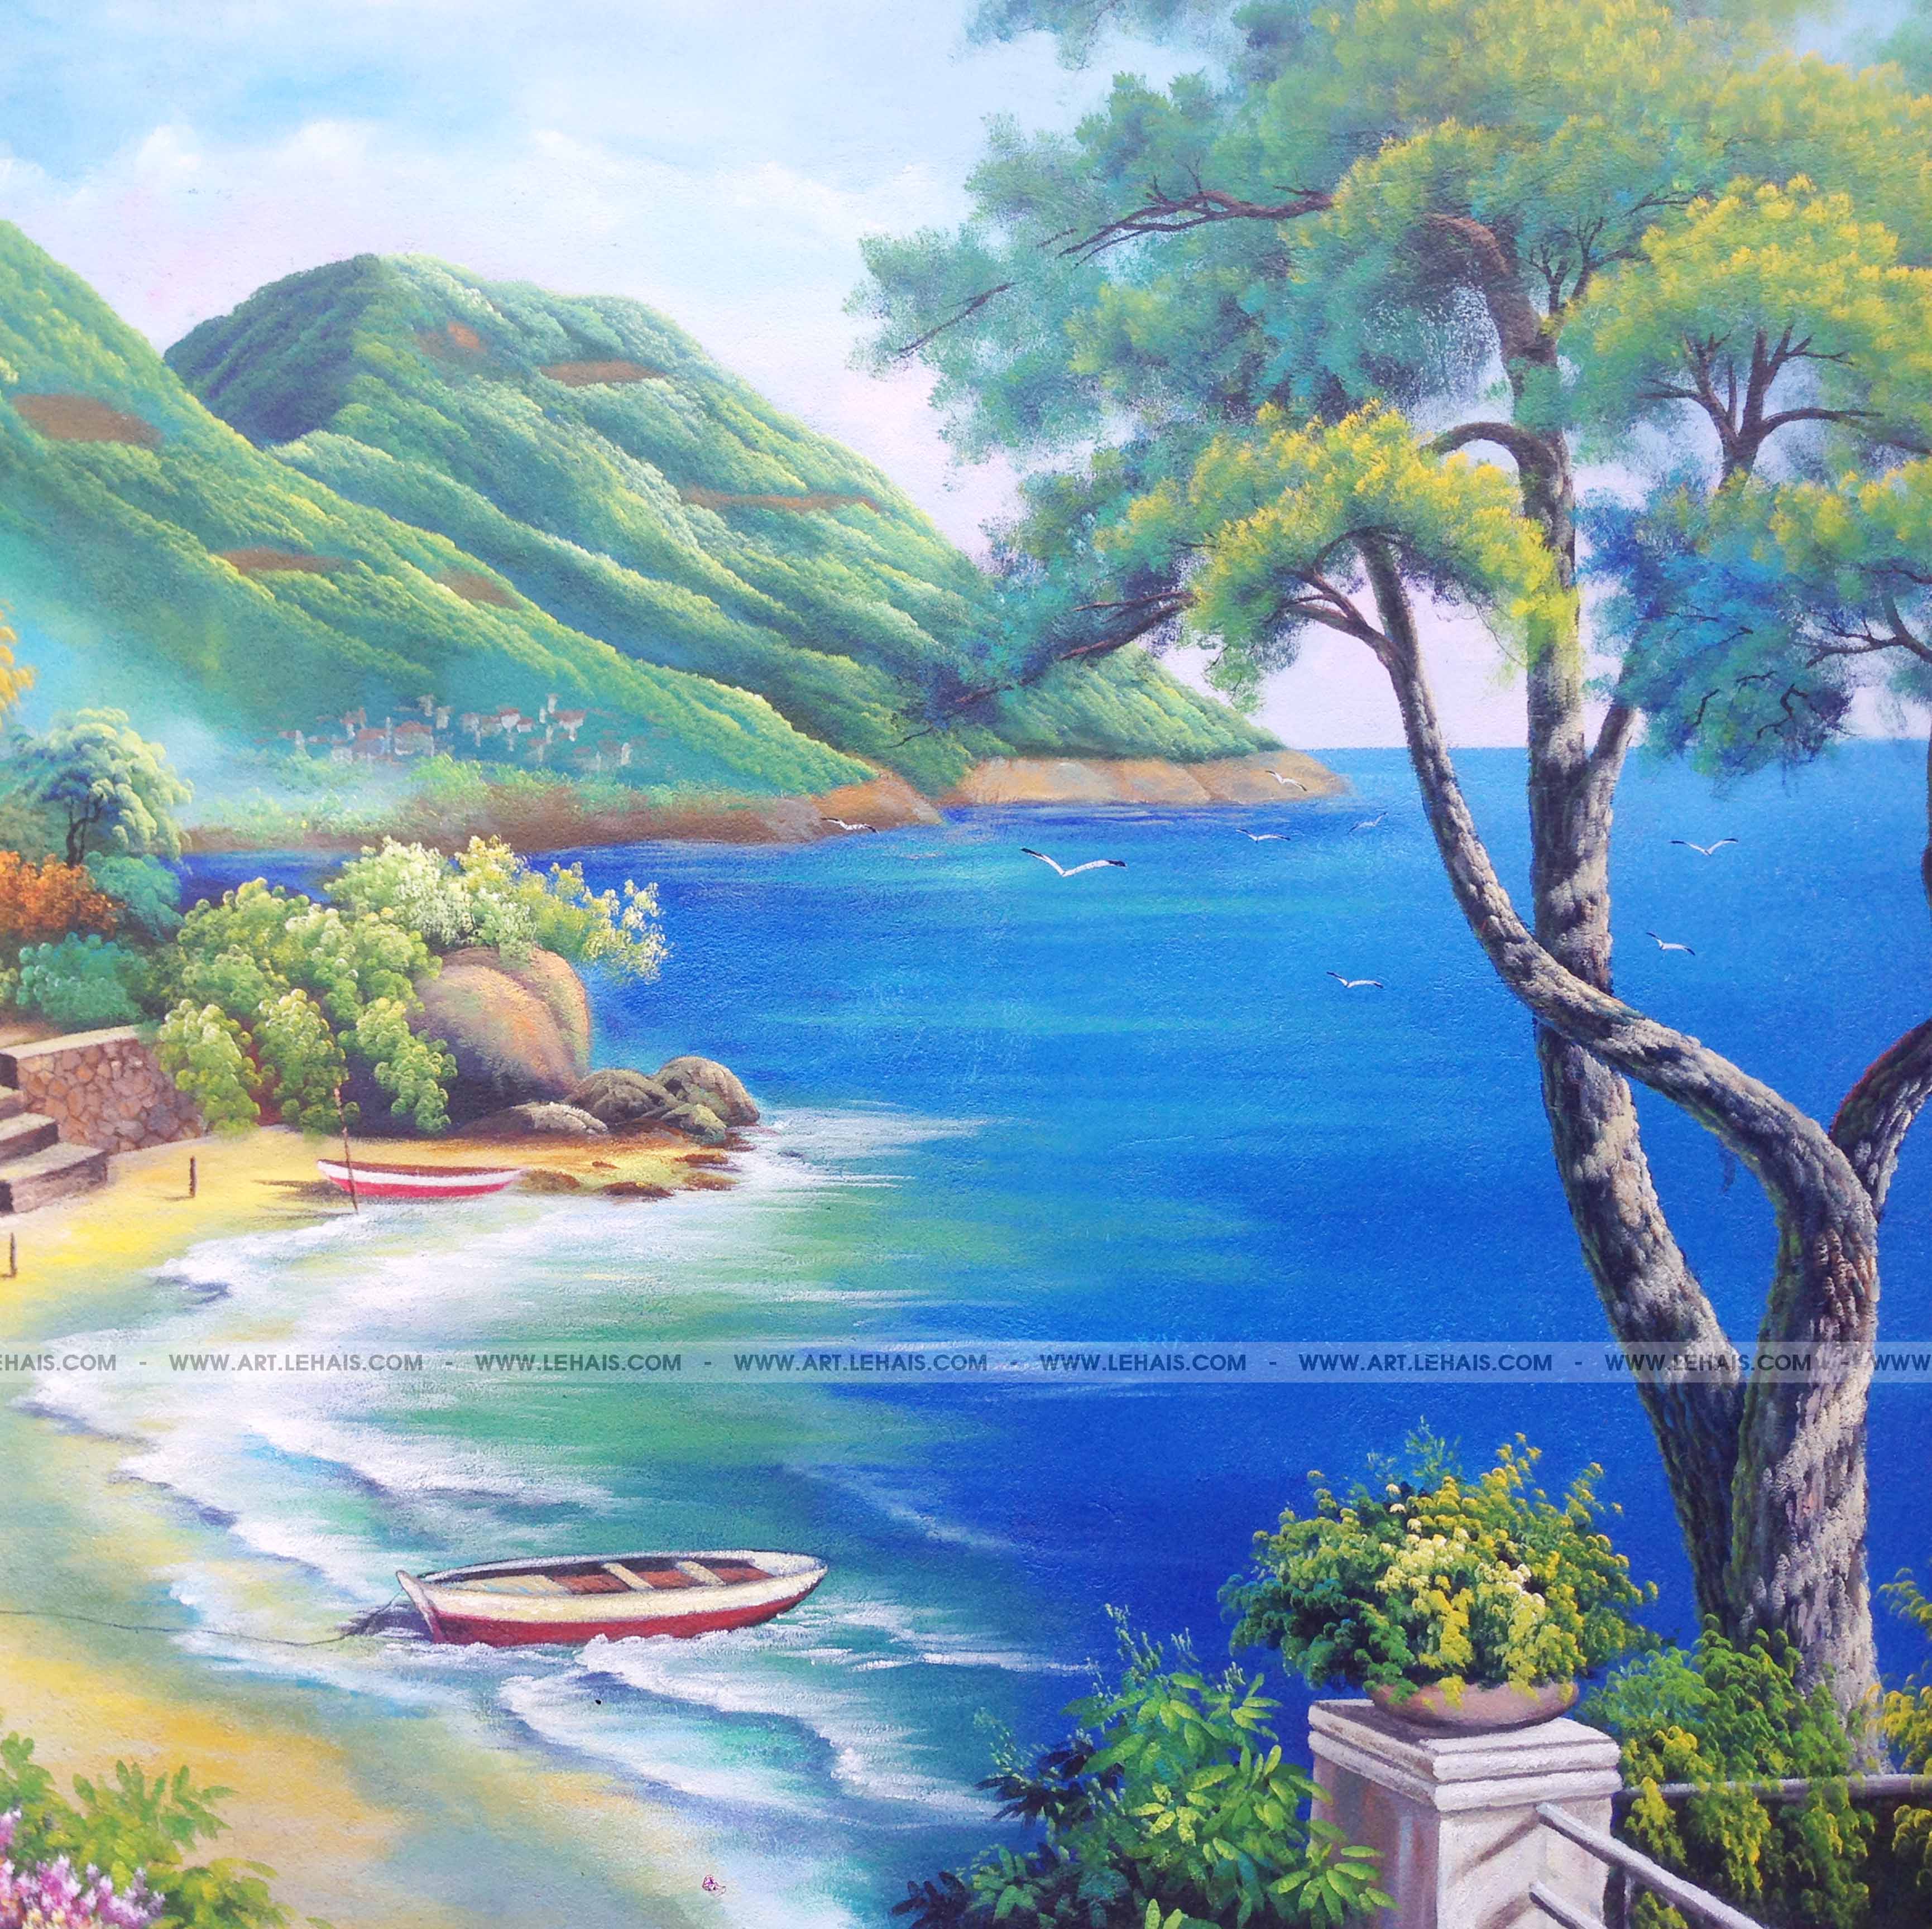 Vẽ tranh phong cảnh biển tại gia đình ở Tề Lỗ, Vĩnh Tường, Vĩnh Phúc -  TT115LHAR - LEHAIS ART - TRANH NGHỆ THUẬT CAO CẤP